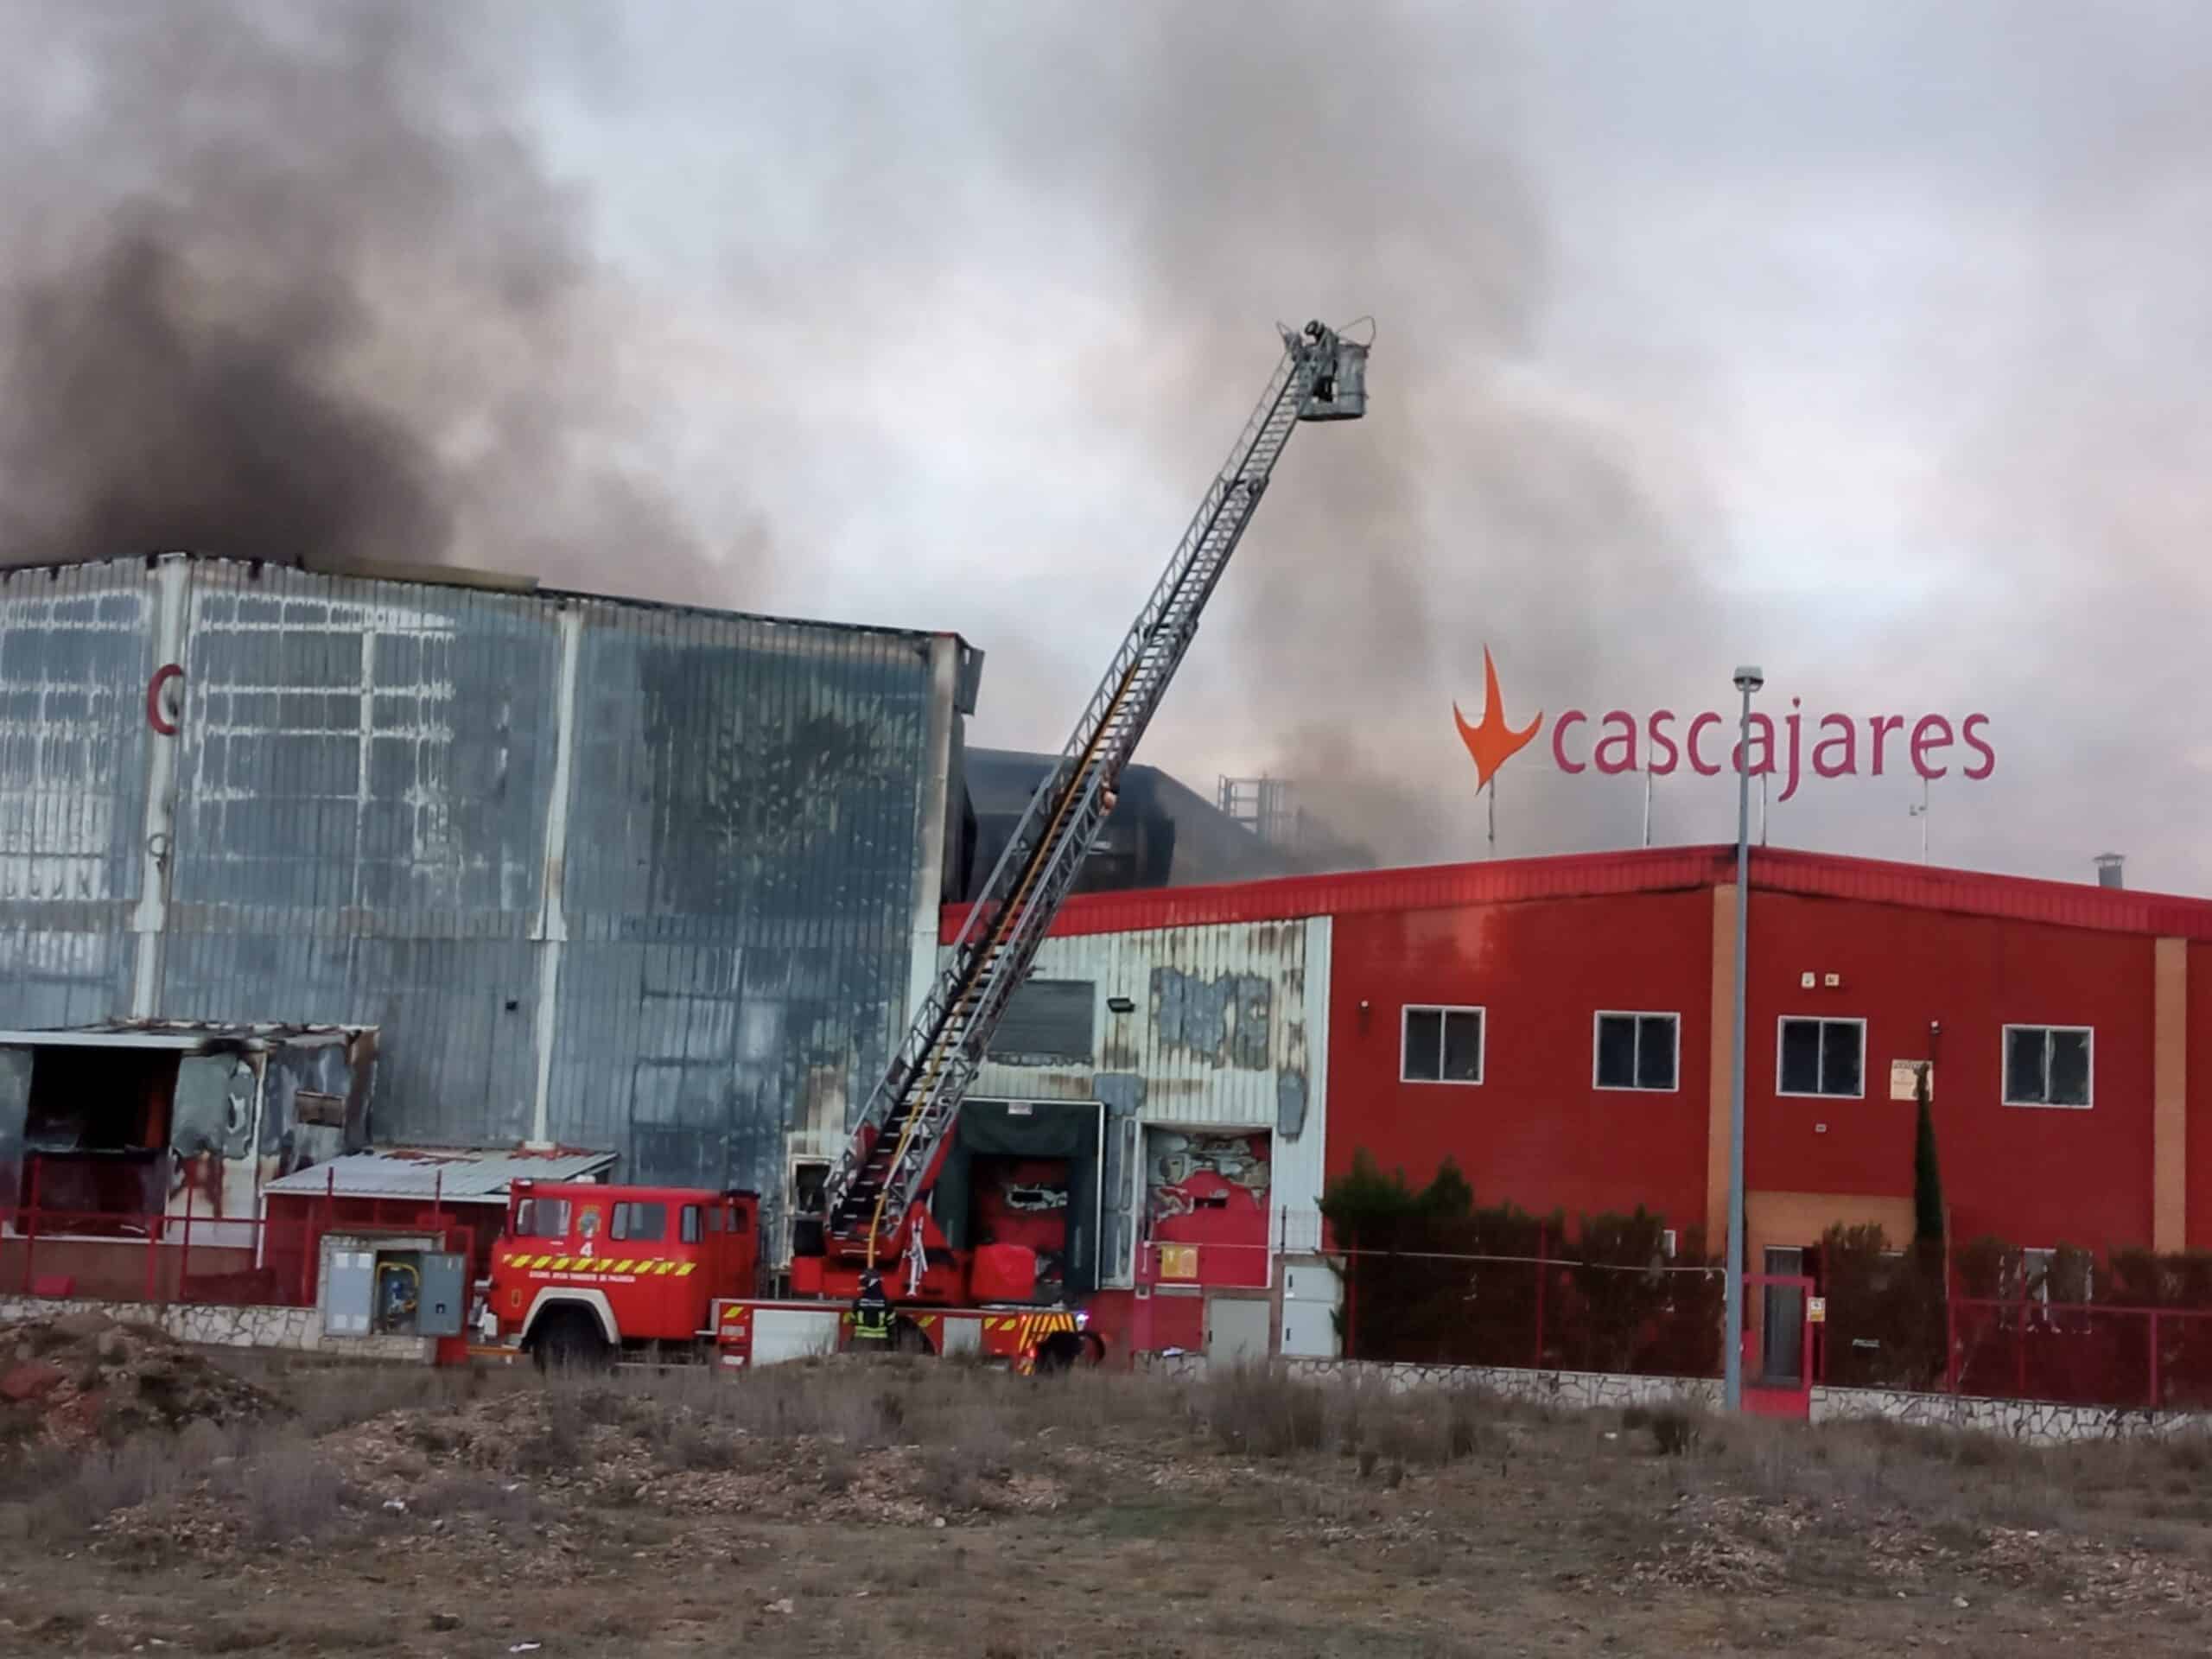 Un incendio destruye parte de las instalaciones de Cascajares en Dueñas (Palencia)